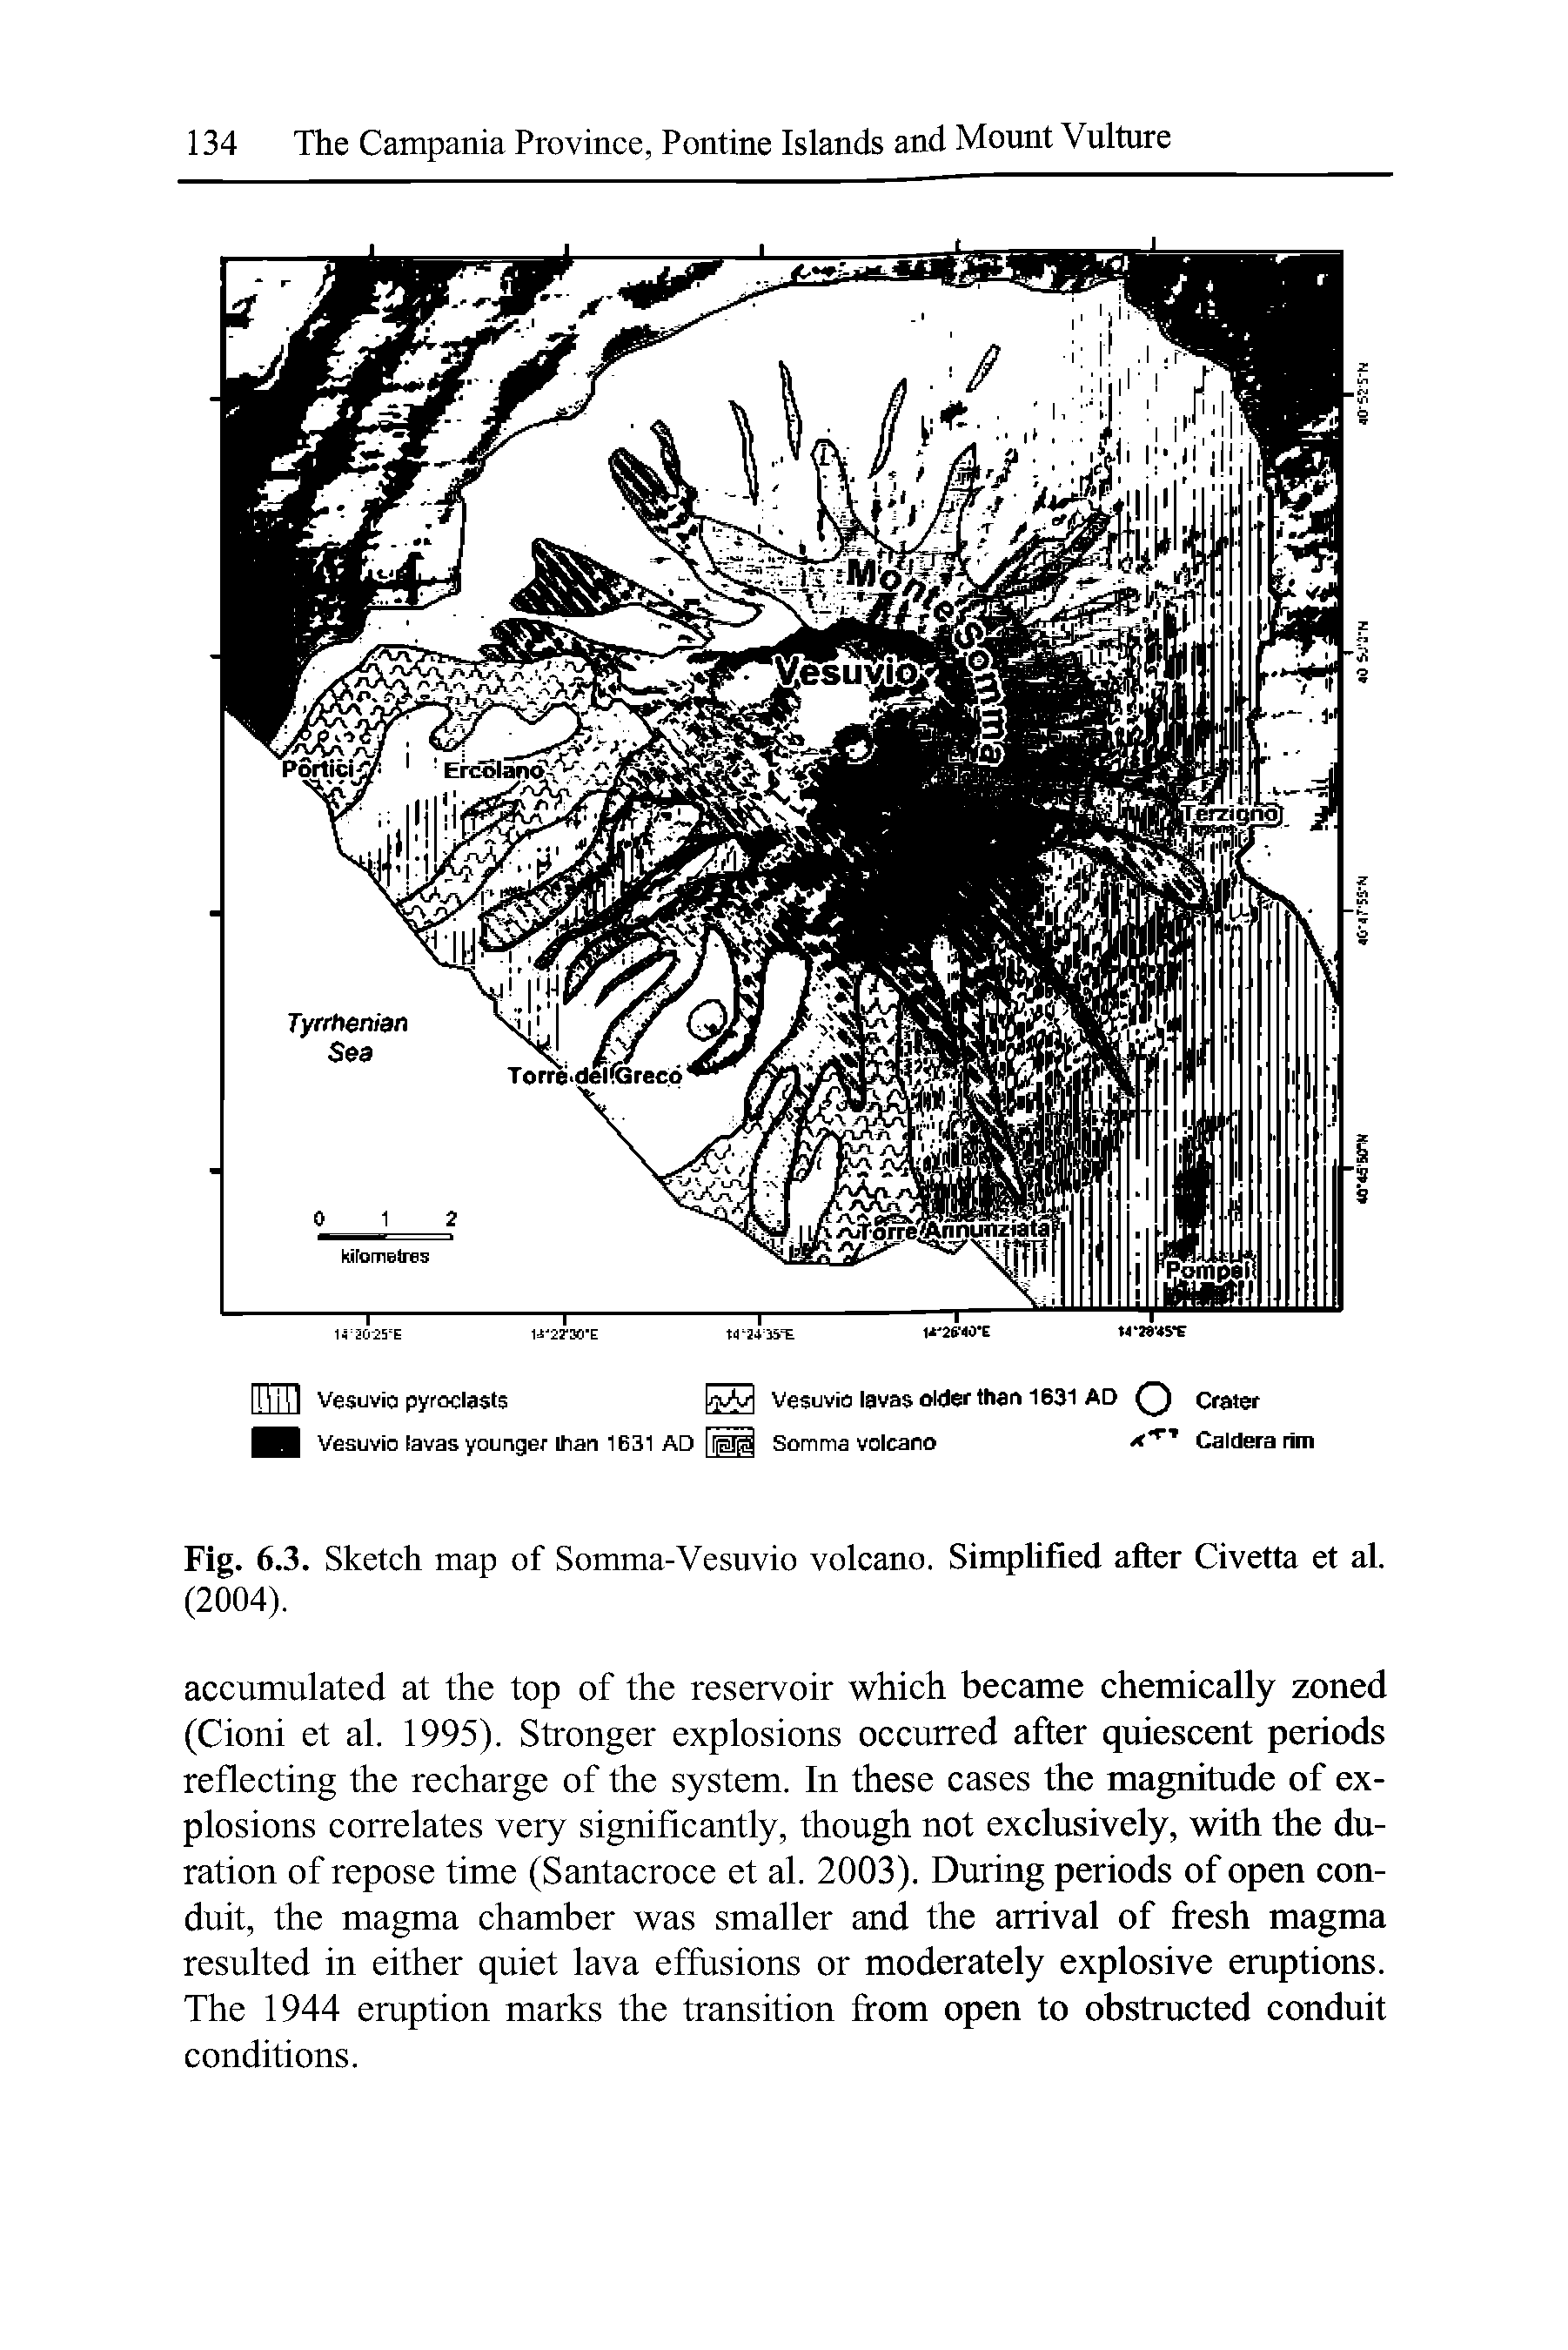 Fig. 6.3. Sketch map of Somma-Vesuvio volcano. Simplified after Civetta et al. (2004).